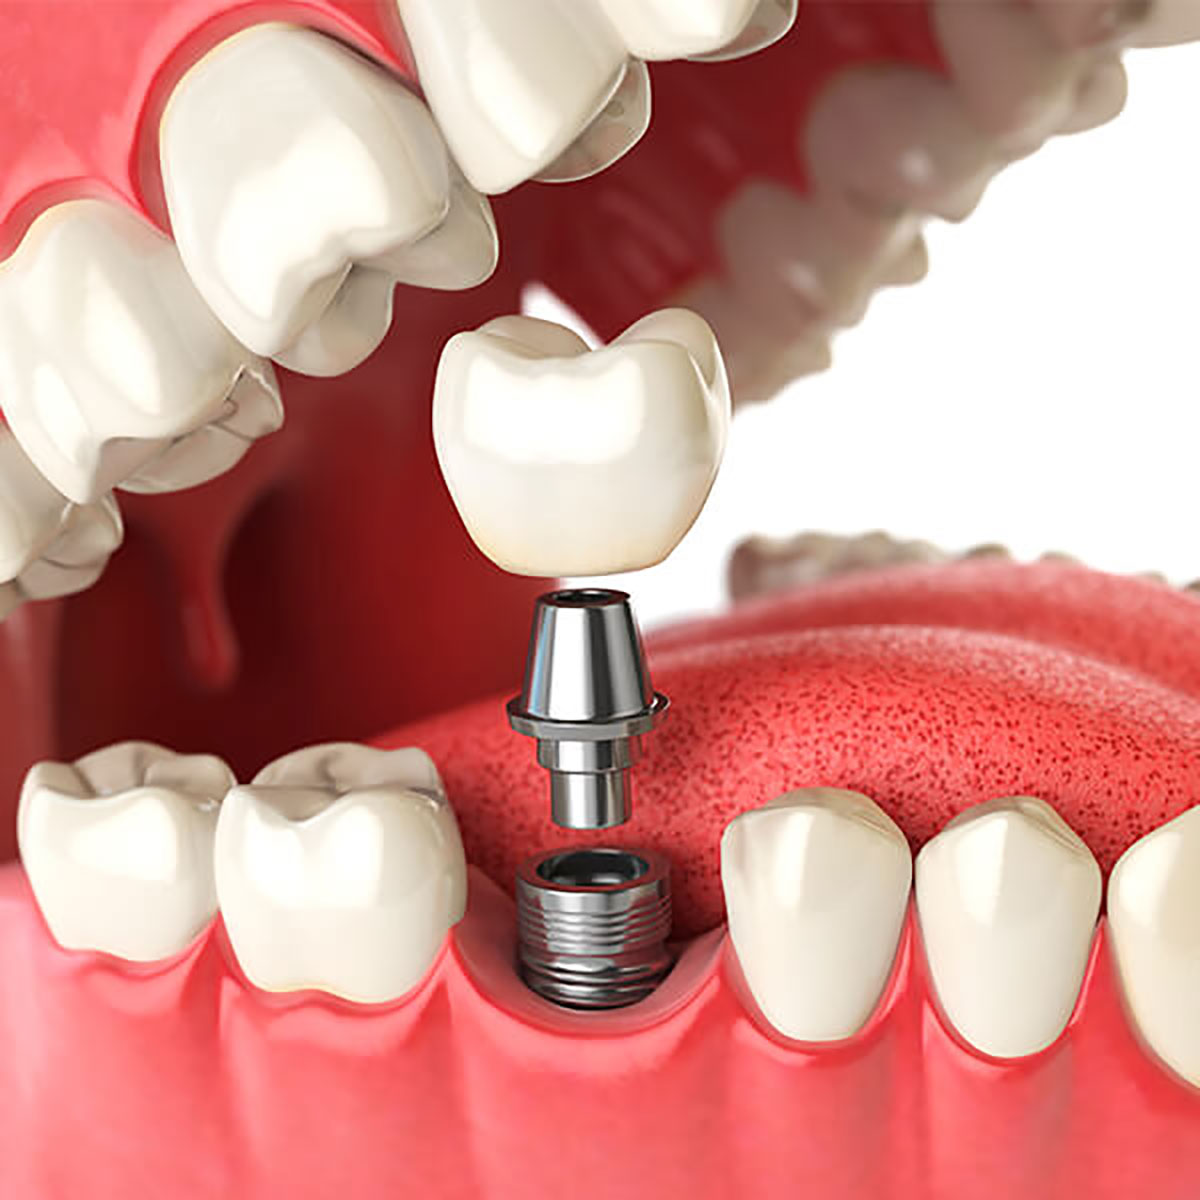 Zirconium Implants Bellevue WA - Zirconium Dental Implant Bellevue -  Zirconium Tooth Implant Bellevue